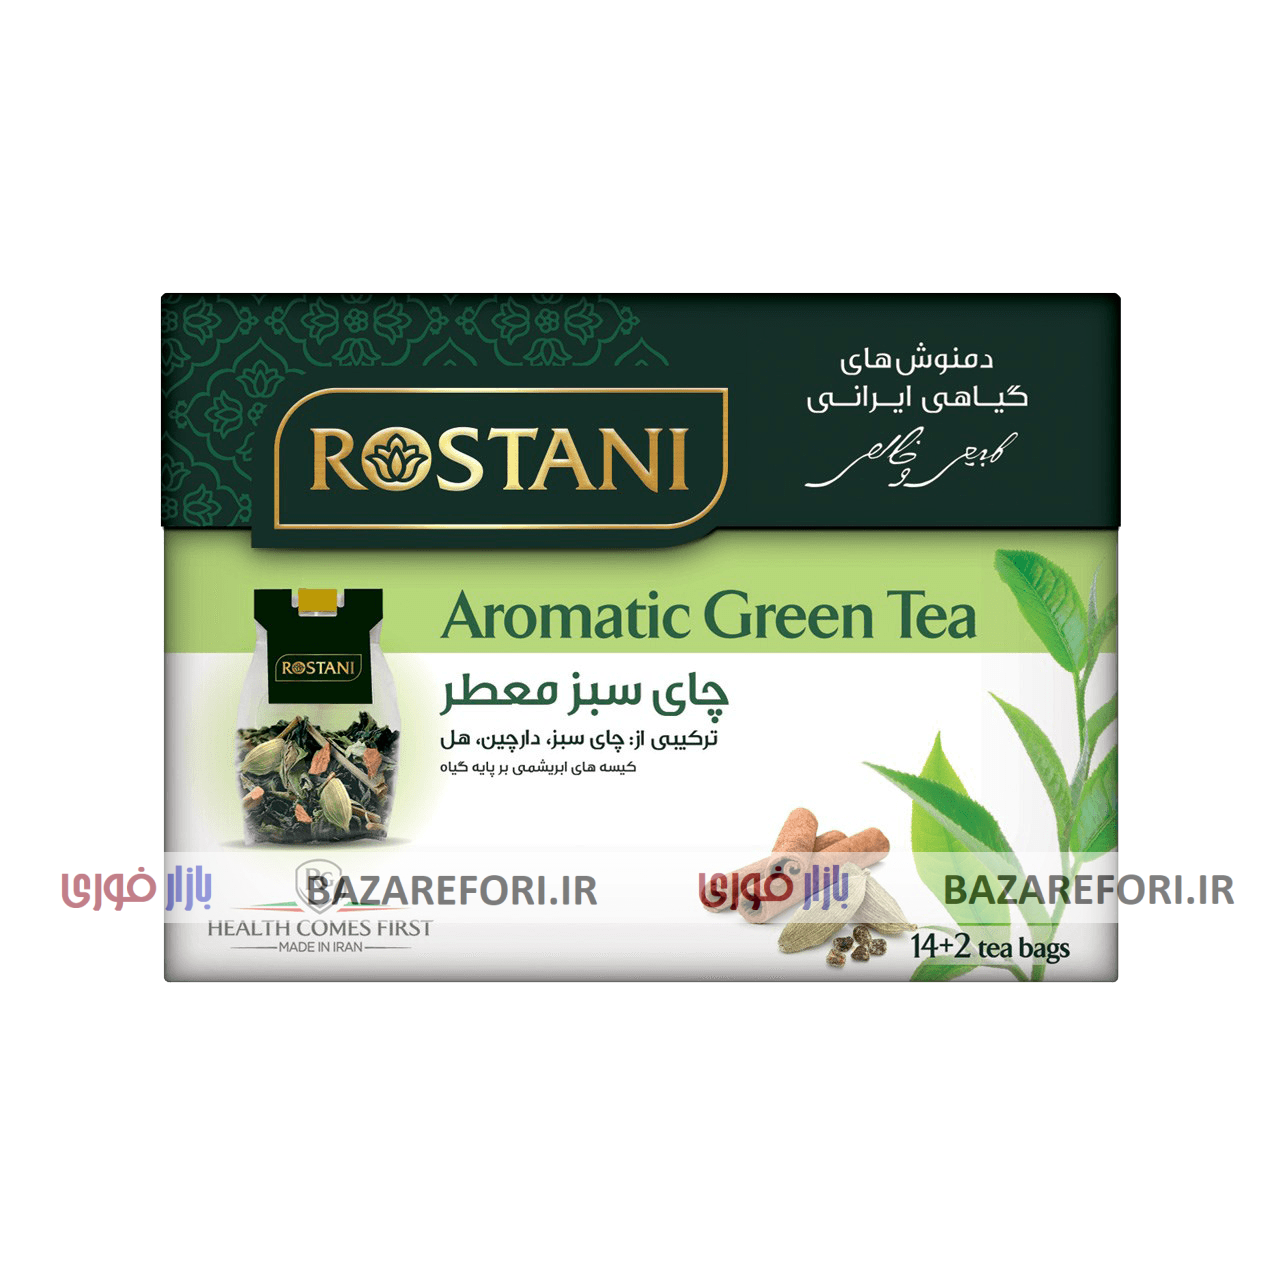 دمنوش گیاهی چای سبز معطر رستنی  مدل Aromatic Green Tea بسته 16 عددی